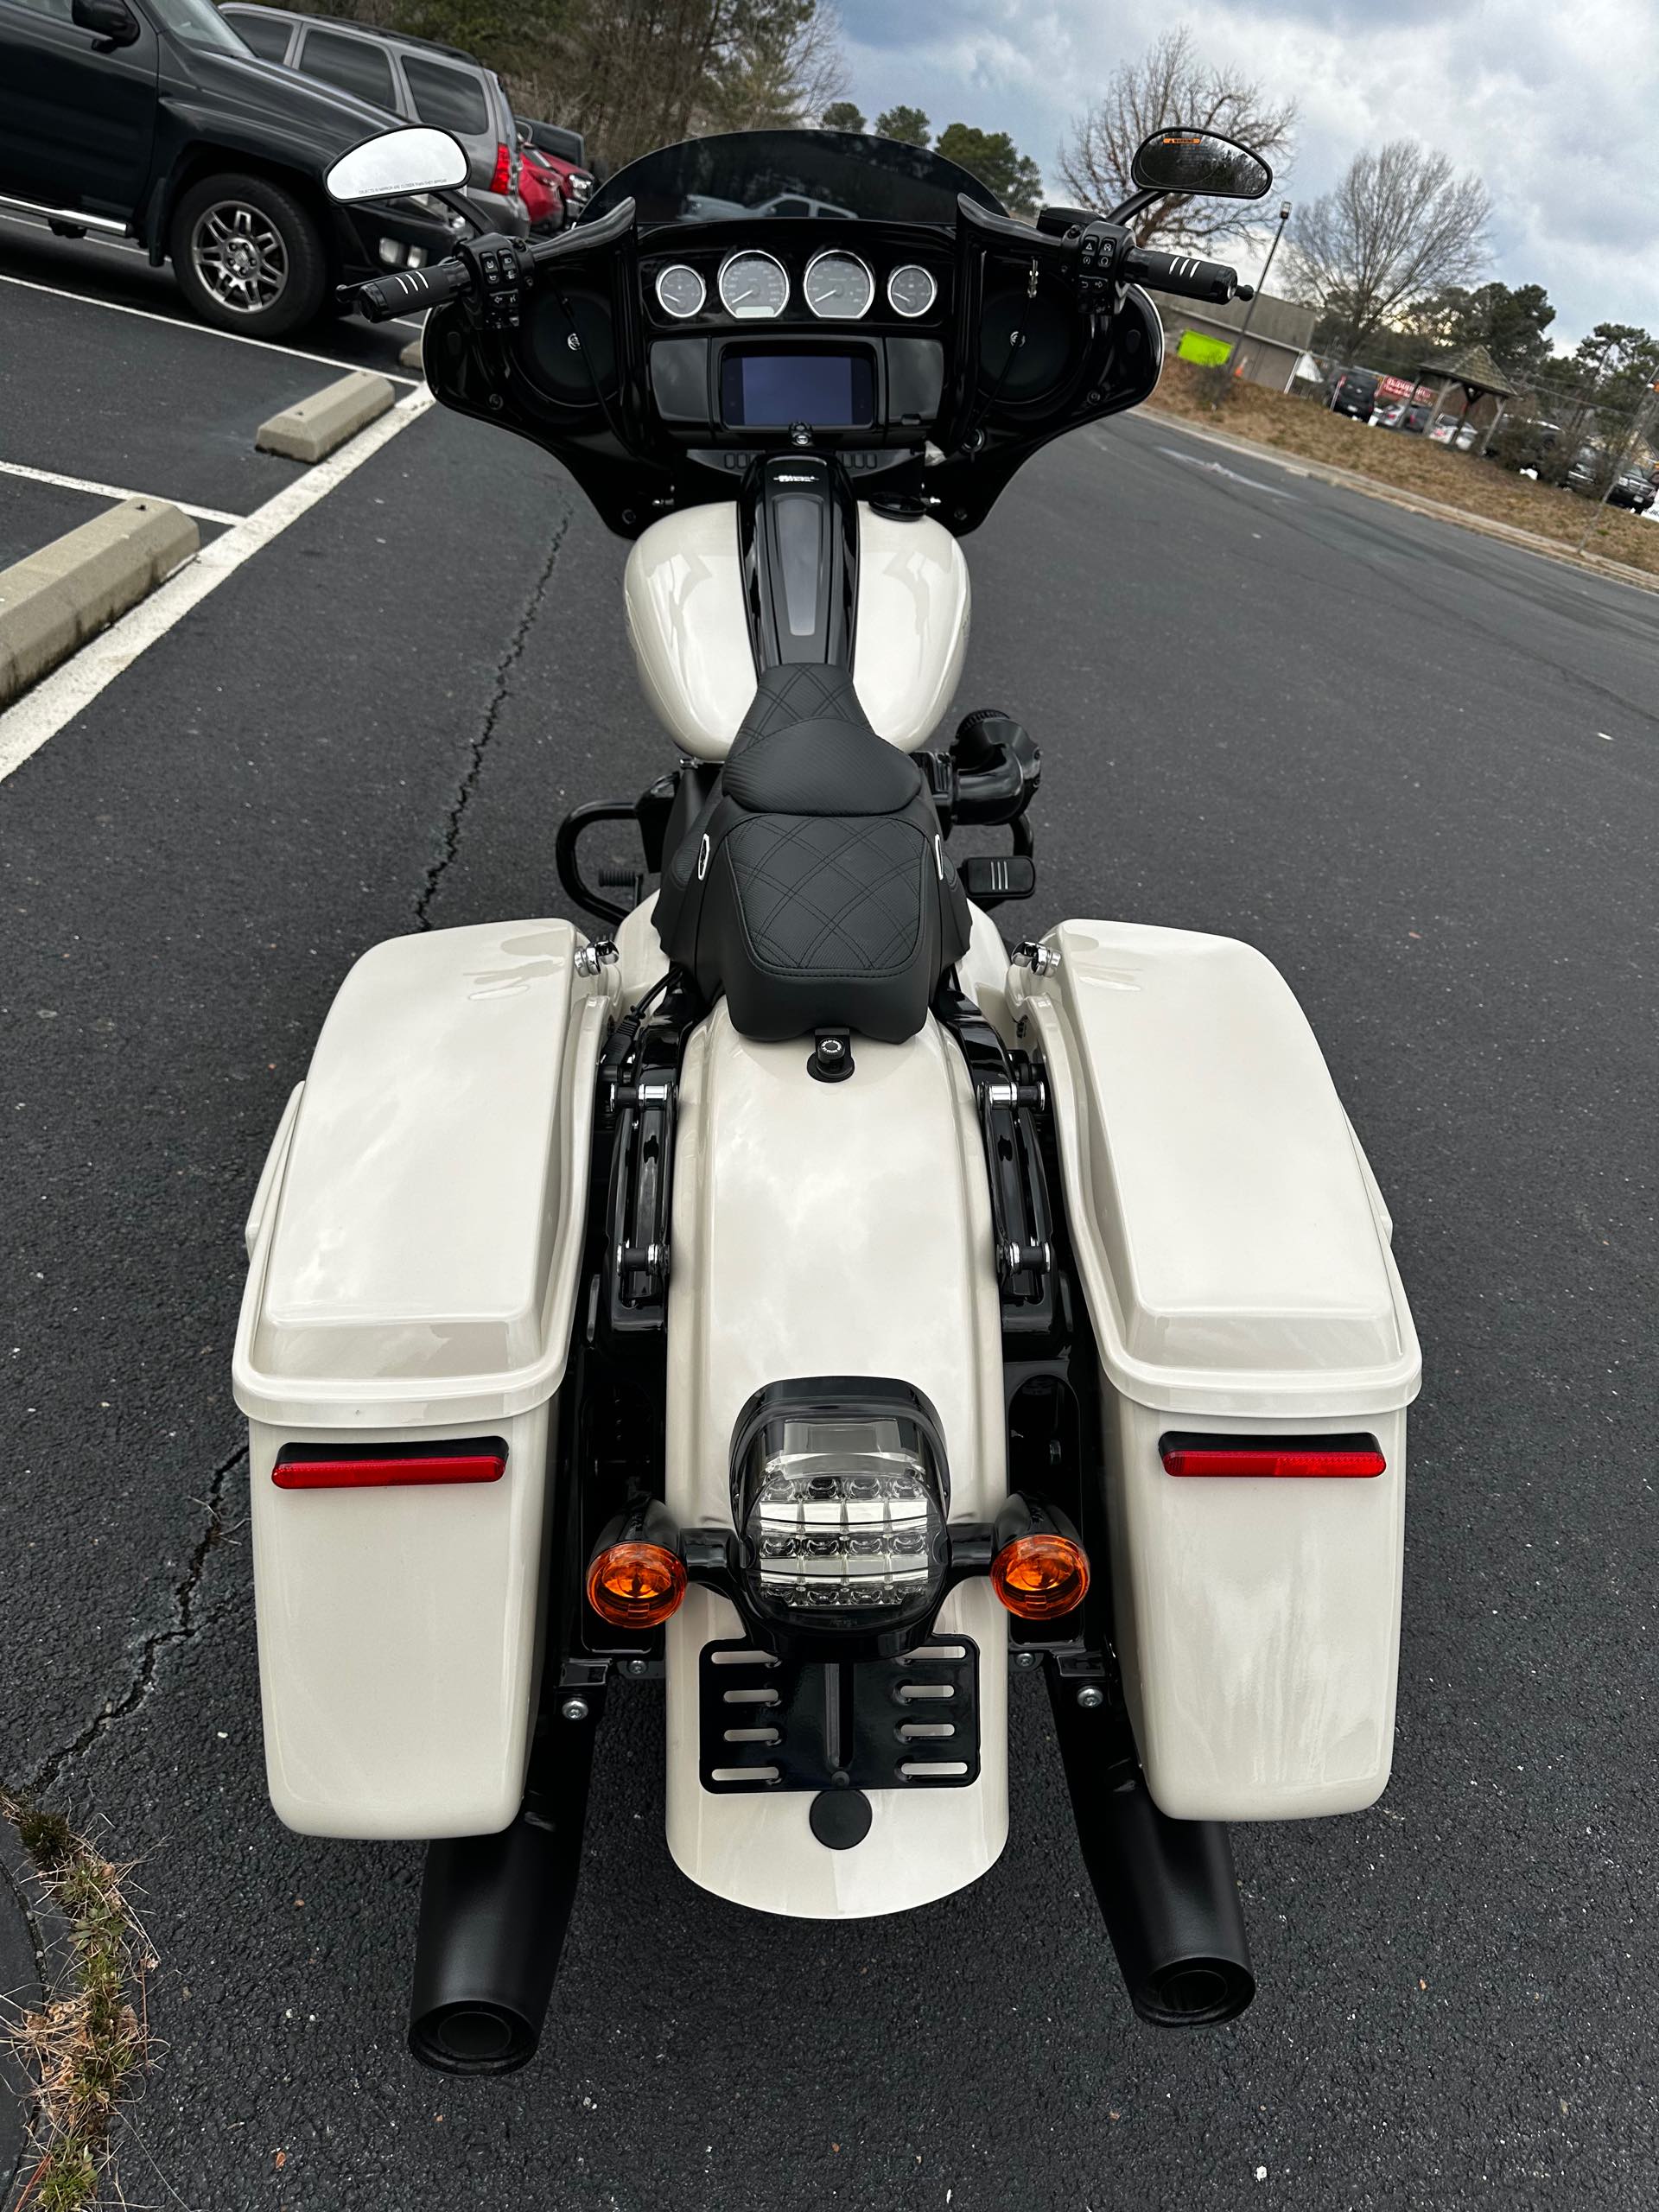 2023 Harley-Davidson Street Glide ST at Steel Horse Harley-Davidson®